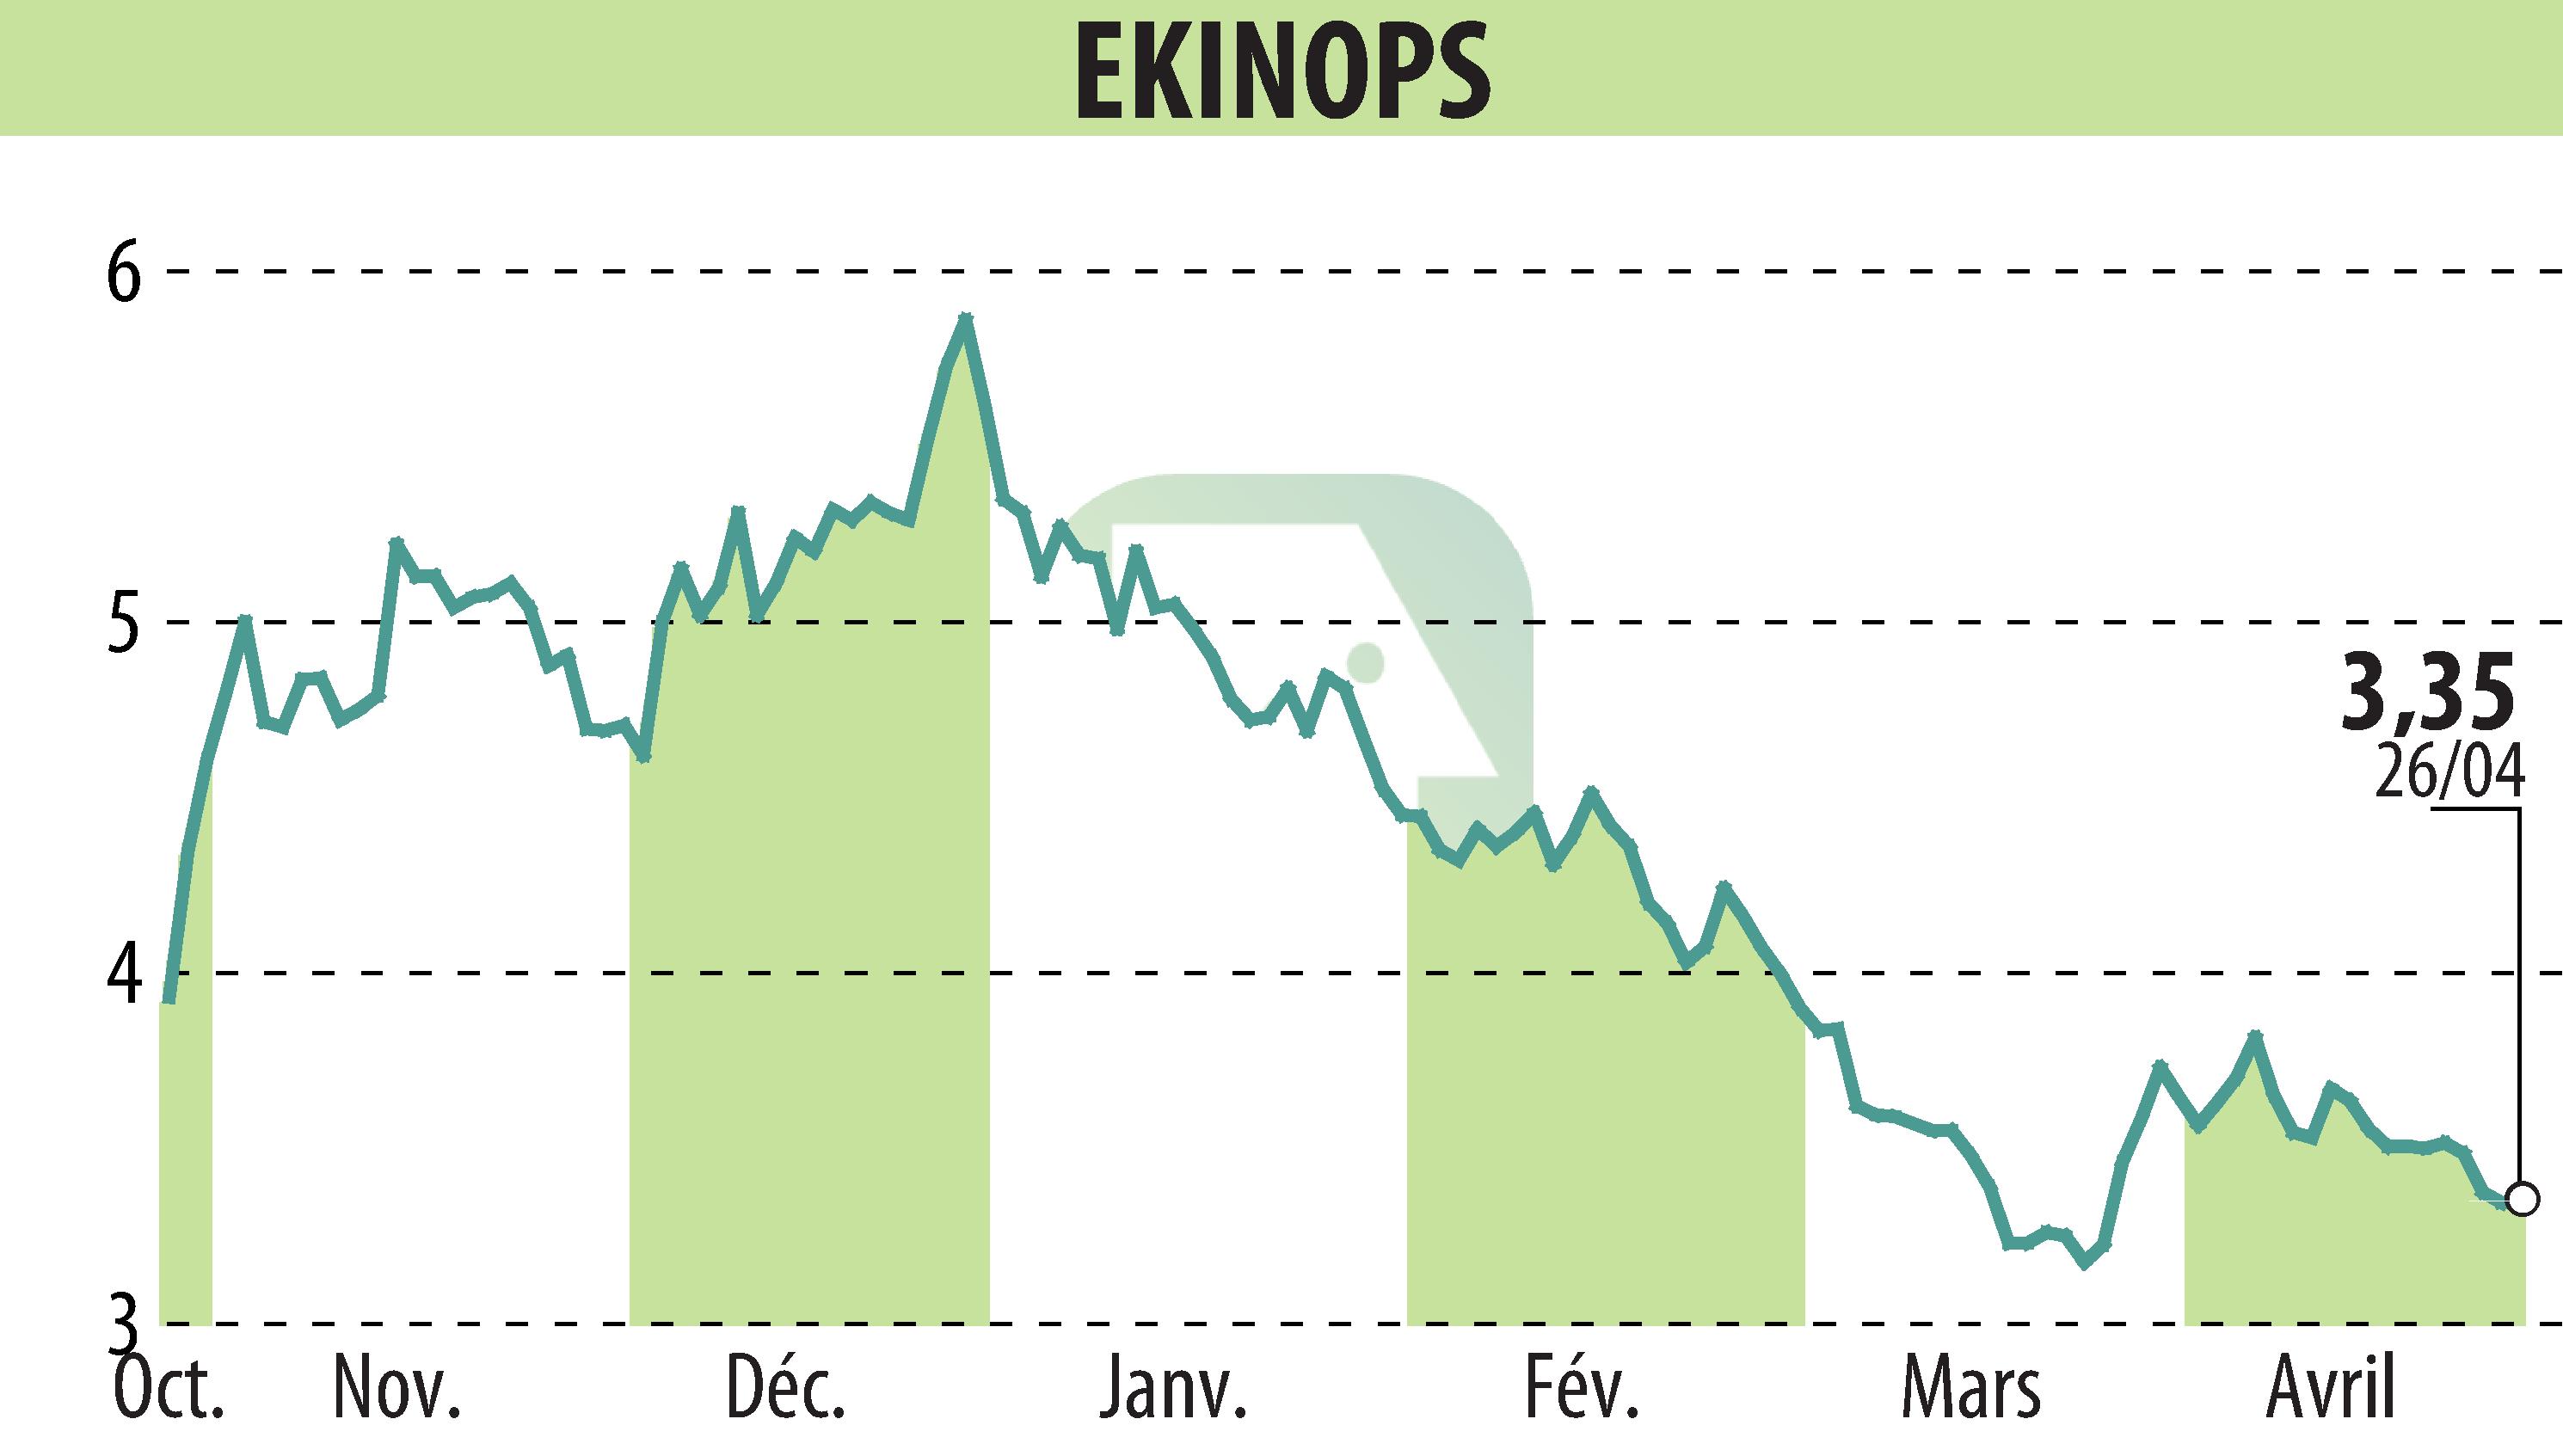 Stock price chart of EKINOPS (EPA:EKI) showing fluctuations.